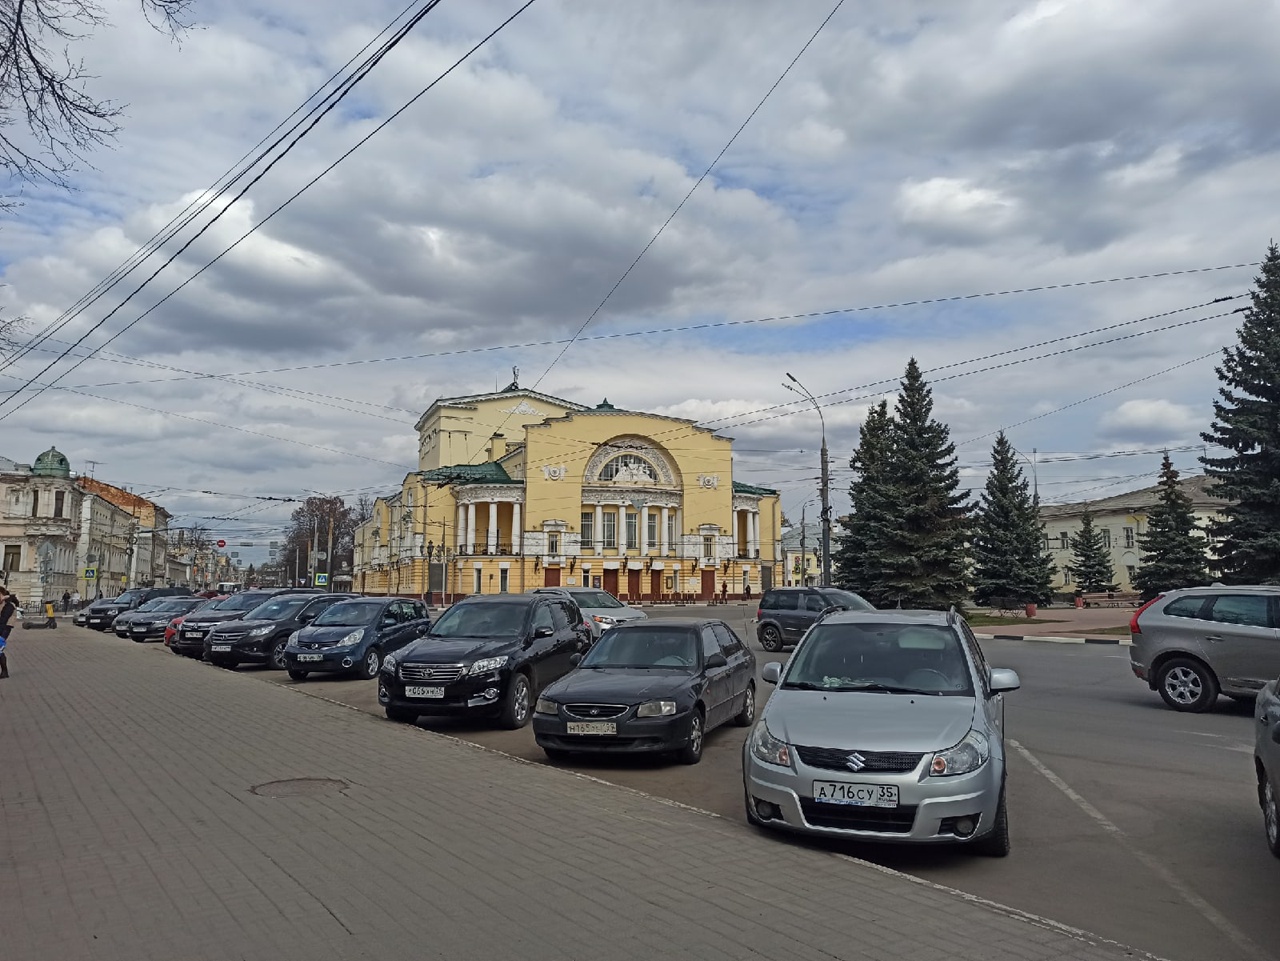 16,5 тысяч билетов приобретено в Волковском театре по «Пушкинской карте»